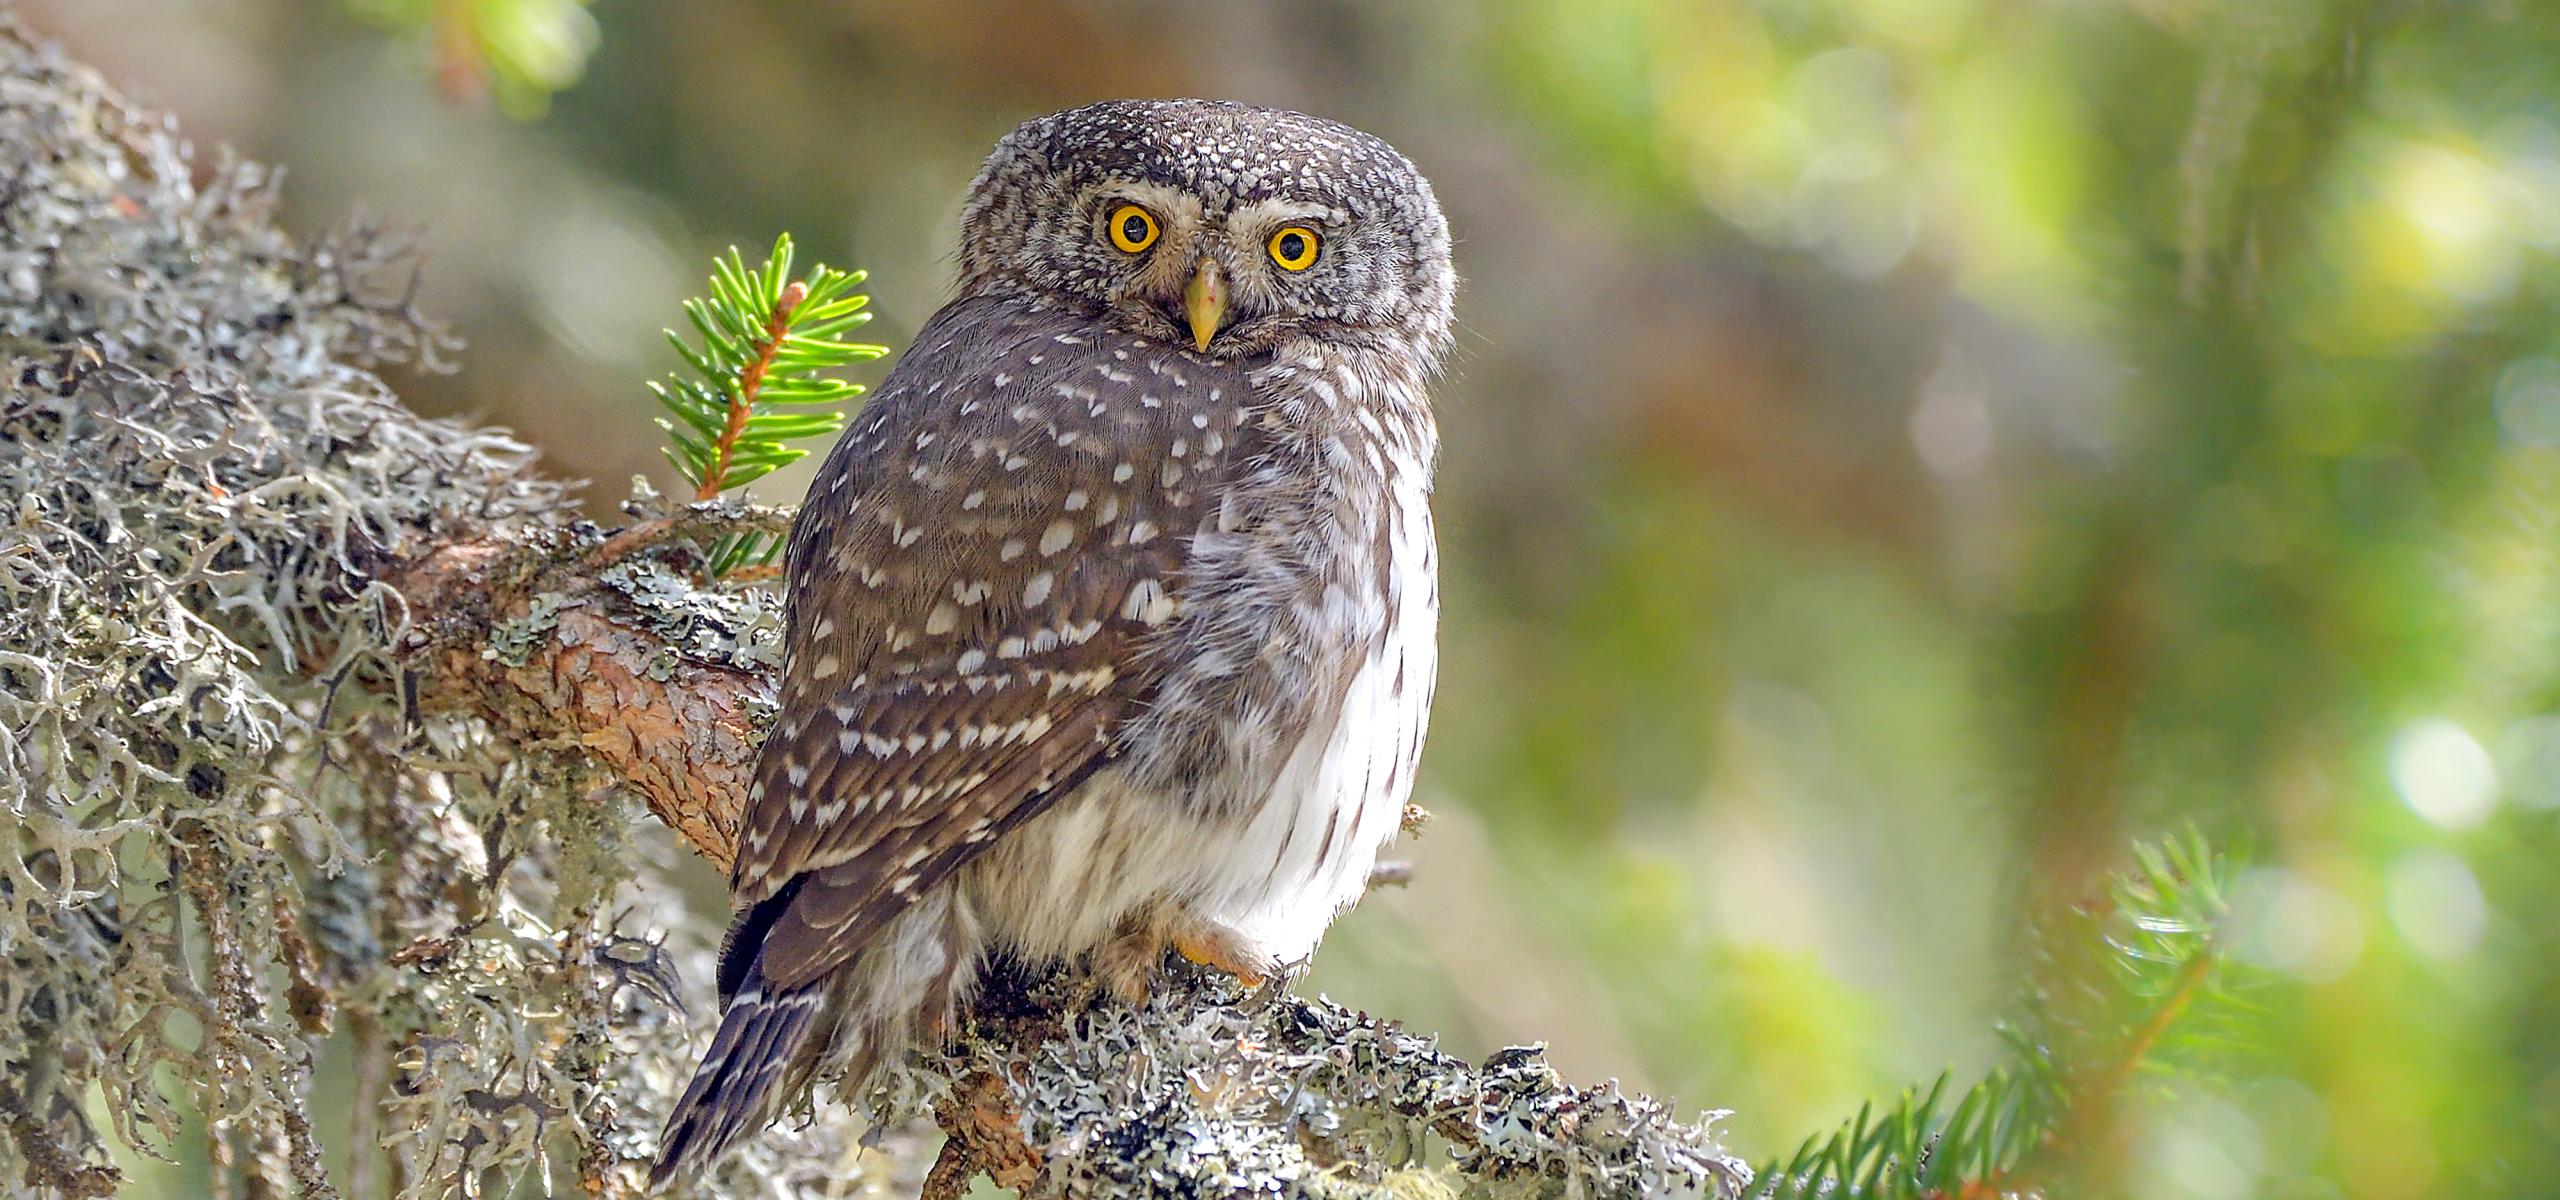 Pygmy owl on a spruce branch.